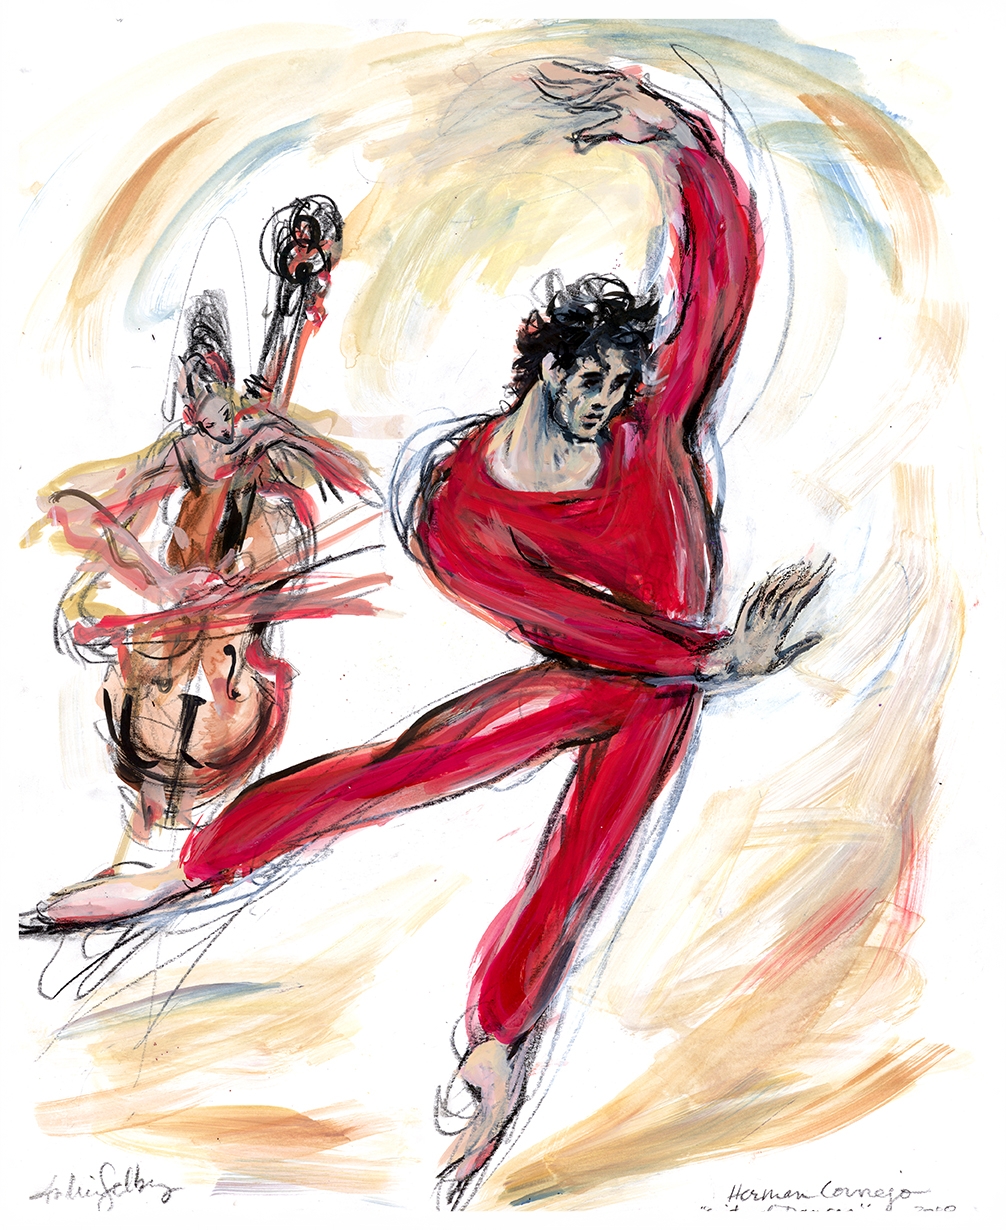 Herman Cornejo in Siute of Dances 